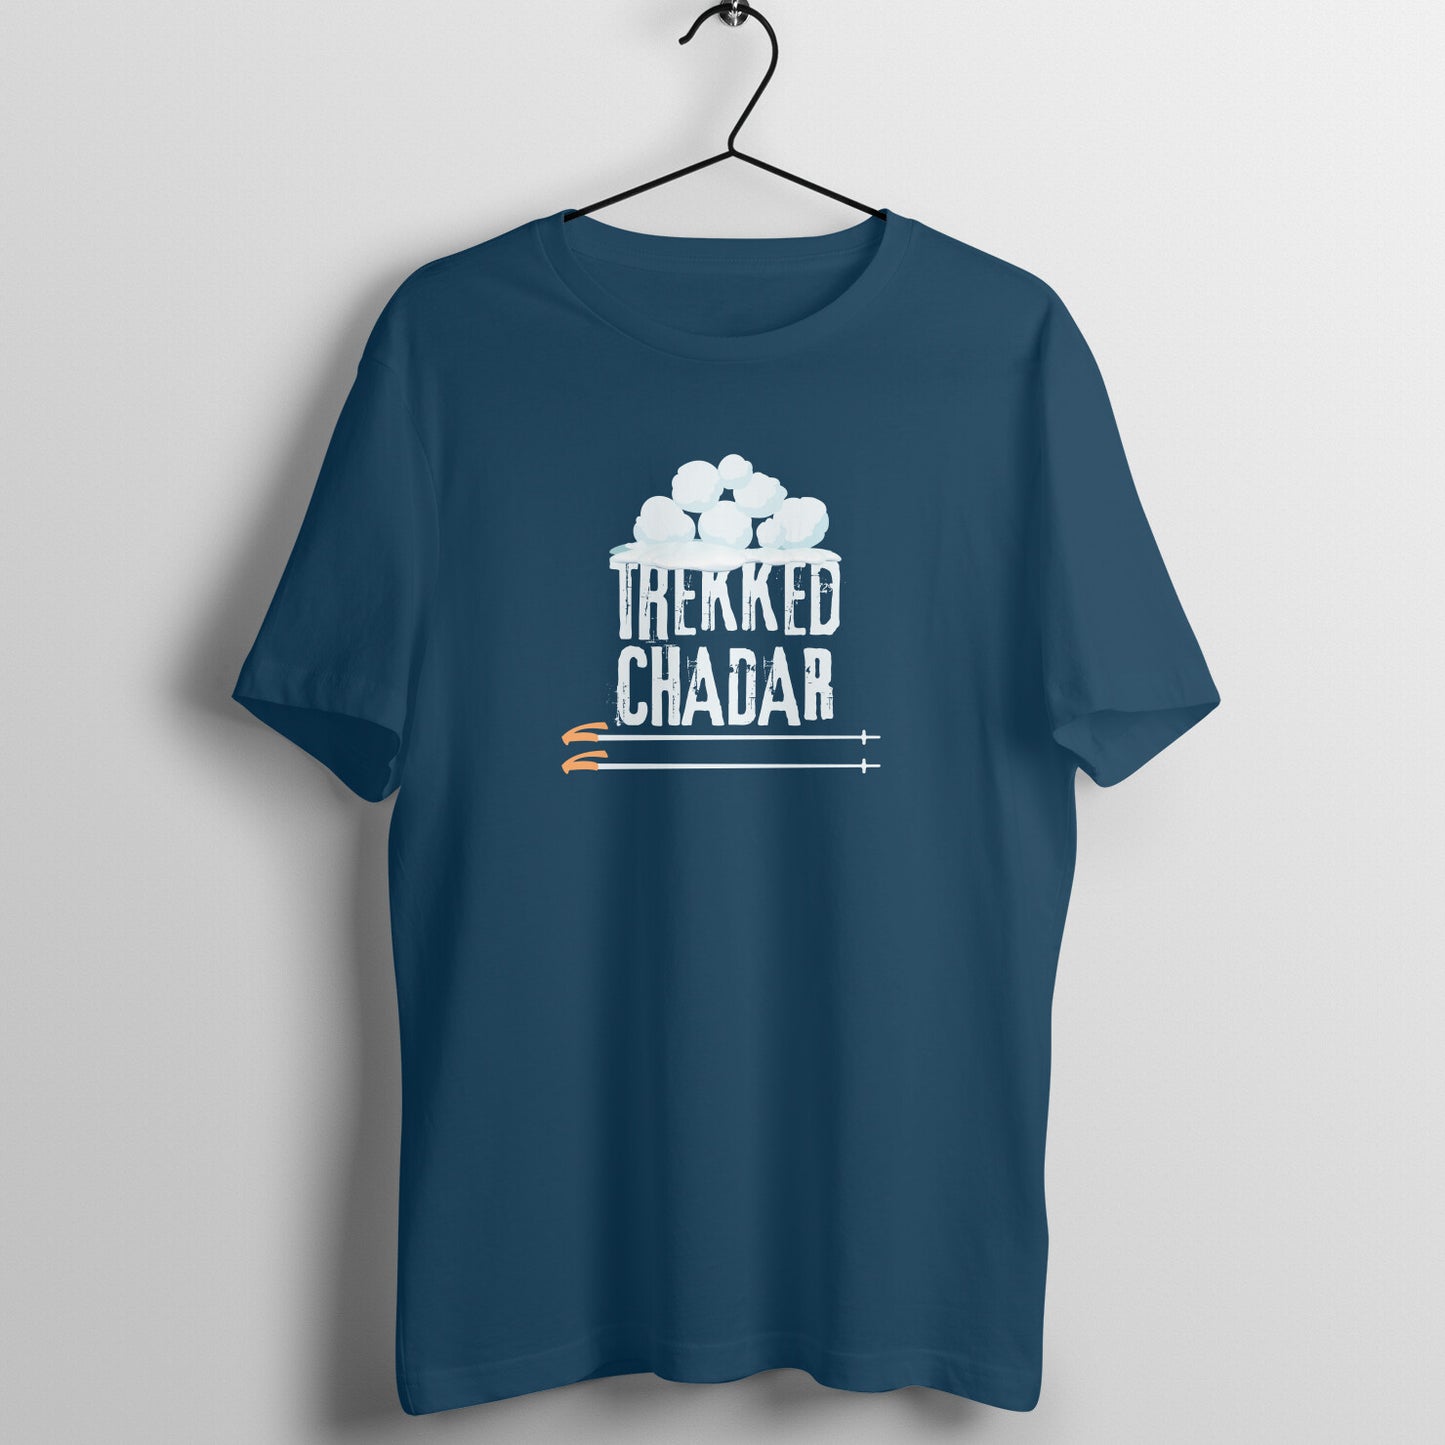 Trekked Chadar - Unisex T-shirt